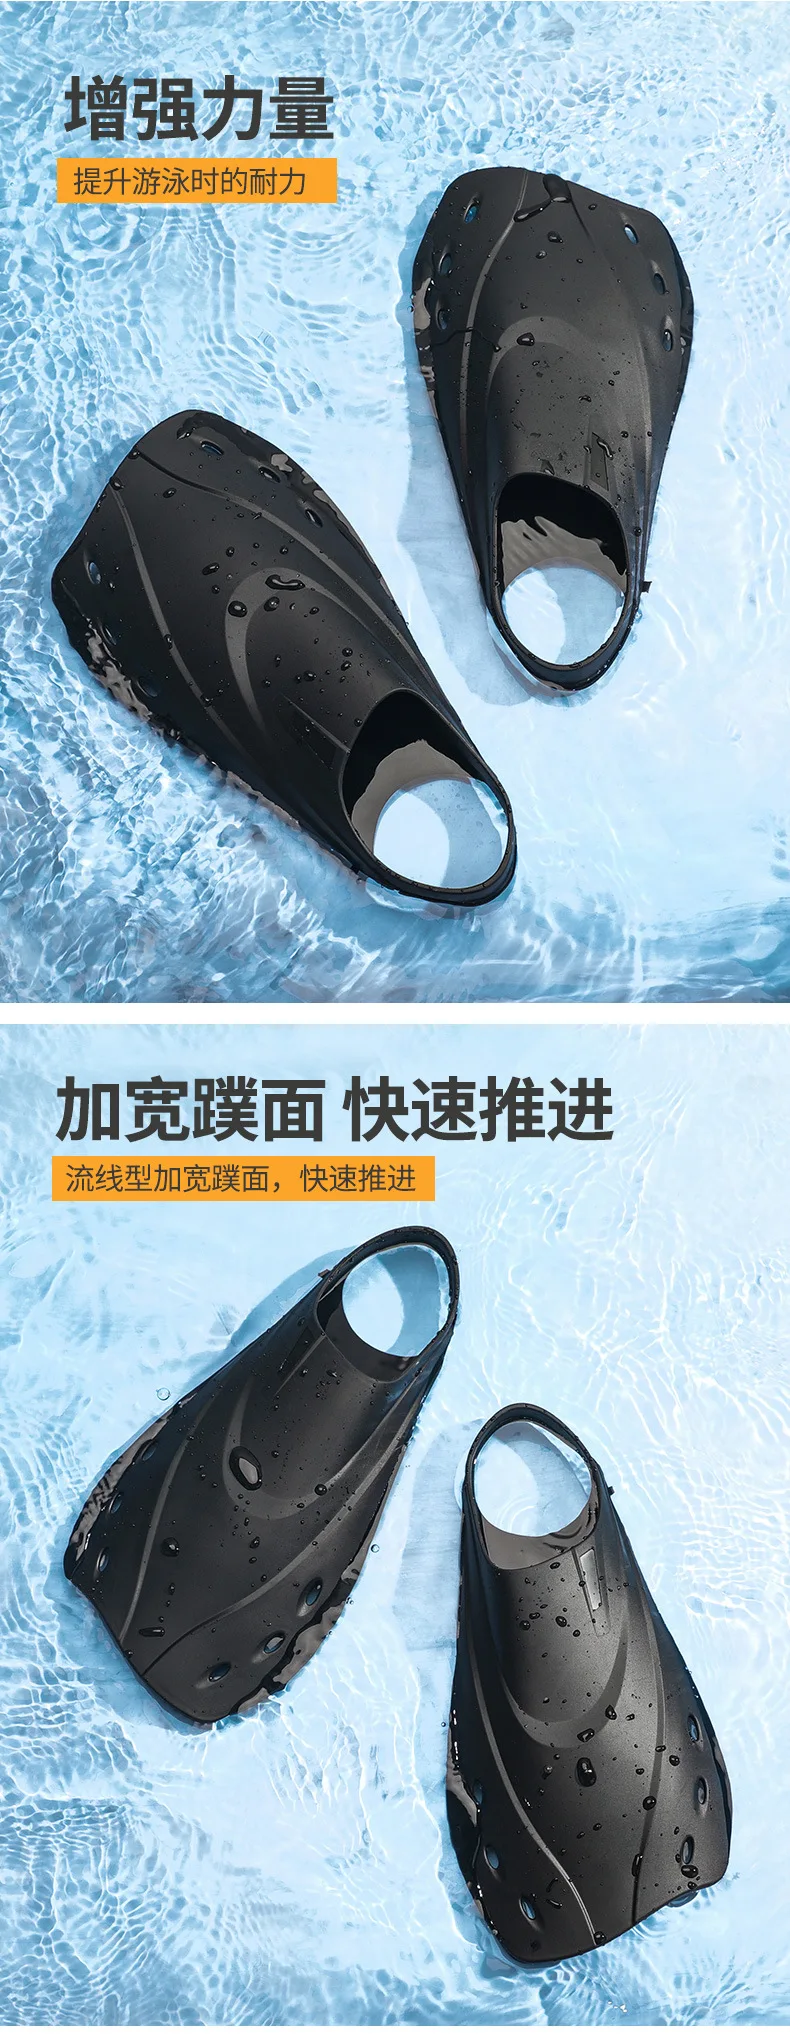 Профессиональное снаряжение для подводного плавания с фристайлом для взрослых TPR короткие ласты для тренировок по плаванию мужчин и женщин